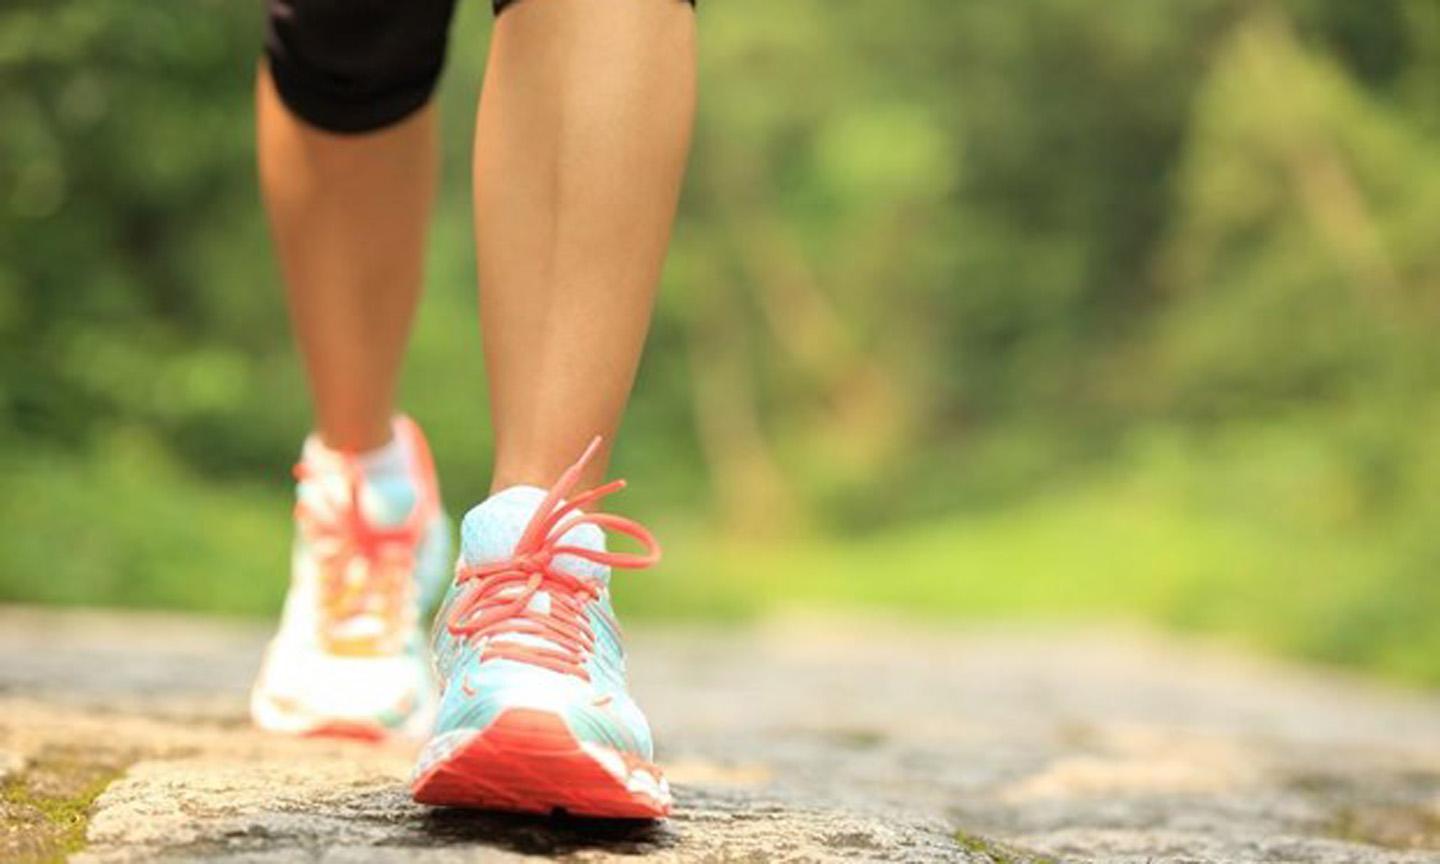 Đi bộ 1 hoặc 2 lần/tuần có thể giảm nguy cơ tử vong do đau tim, đột quỵ hoặc ung thư. (Nguồn: thejakartapost.com)